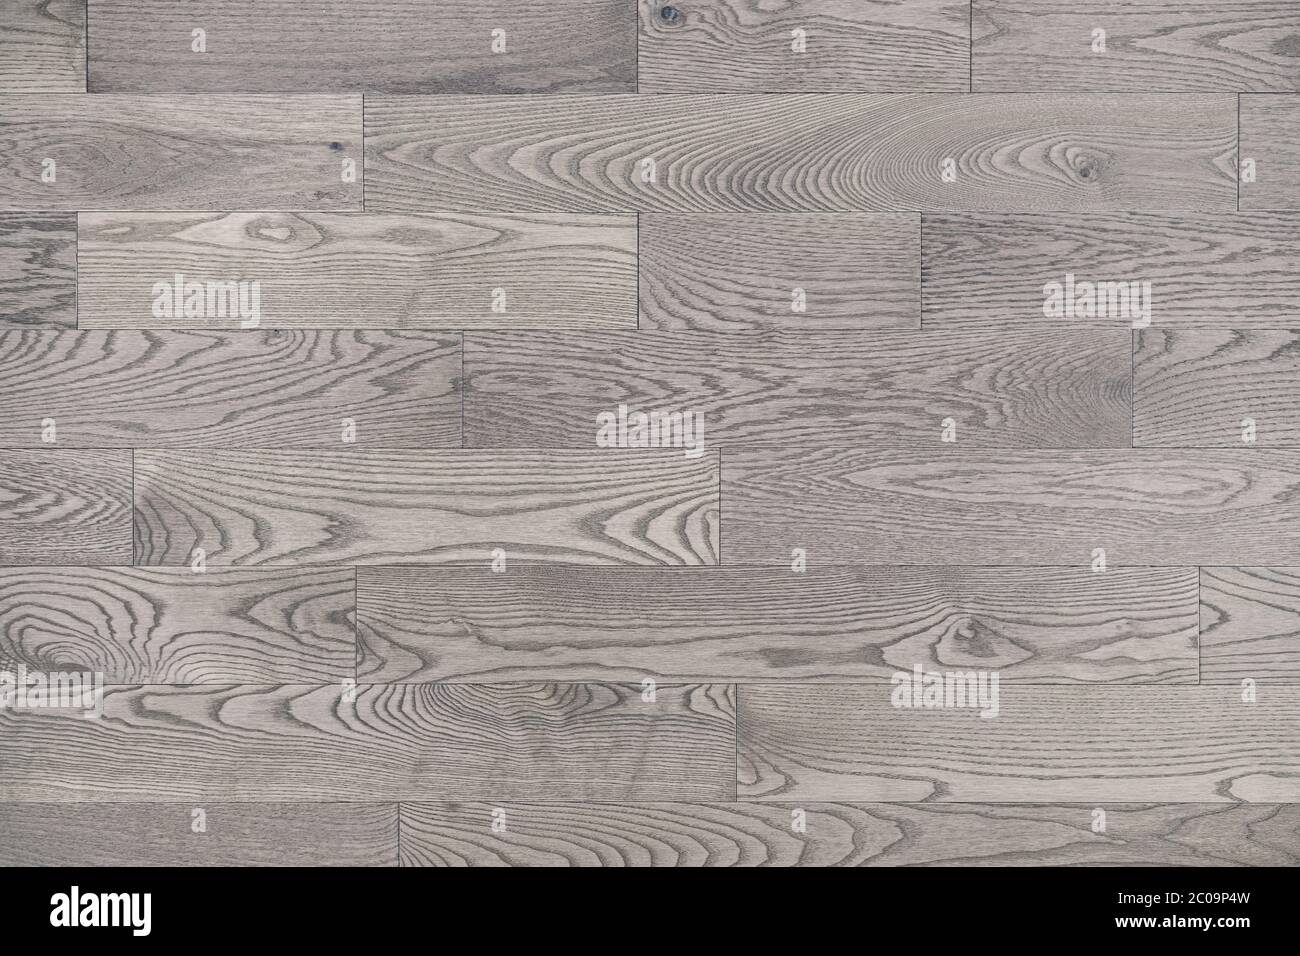 Grigio bianco legno fondo texture pavimento vista dall'alto. La macchia neutra di legno imbiancato conferisce a queste ampie tavole di legno un aspetto moderno Foto Stock